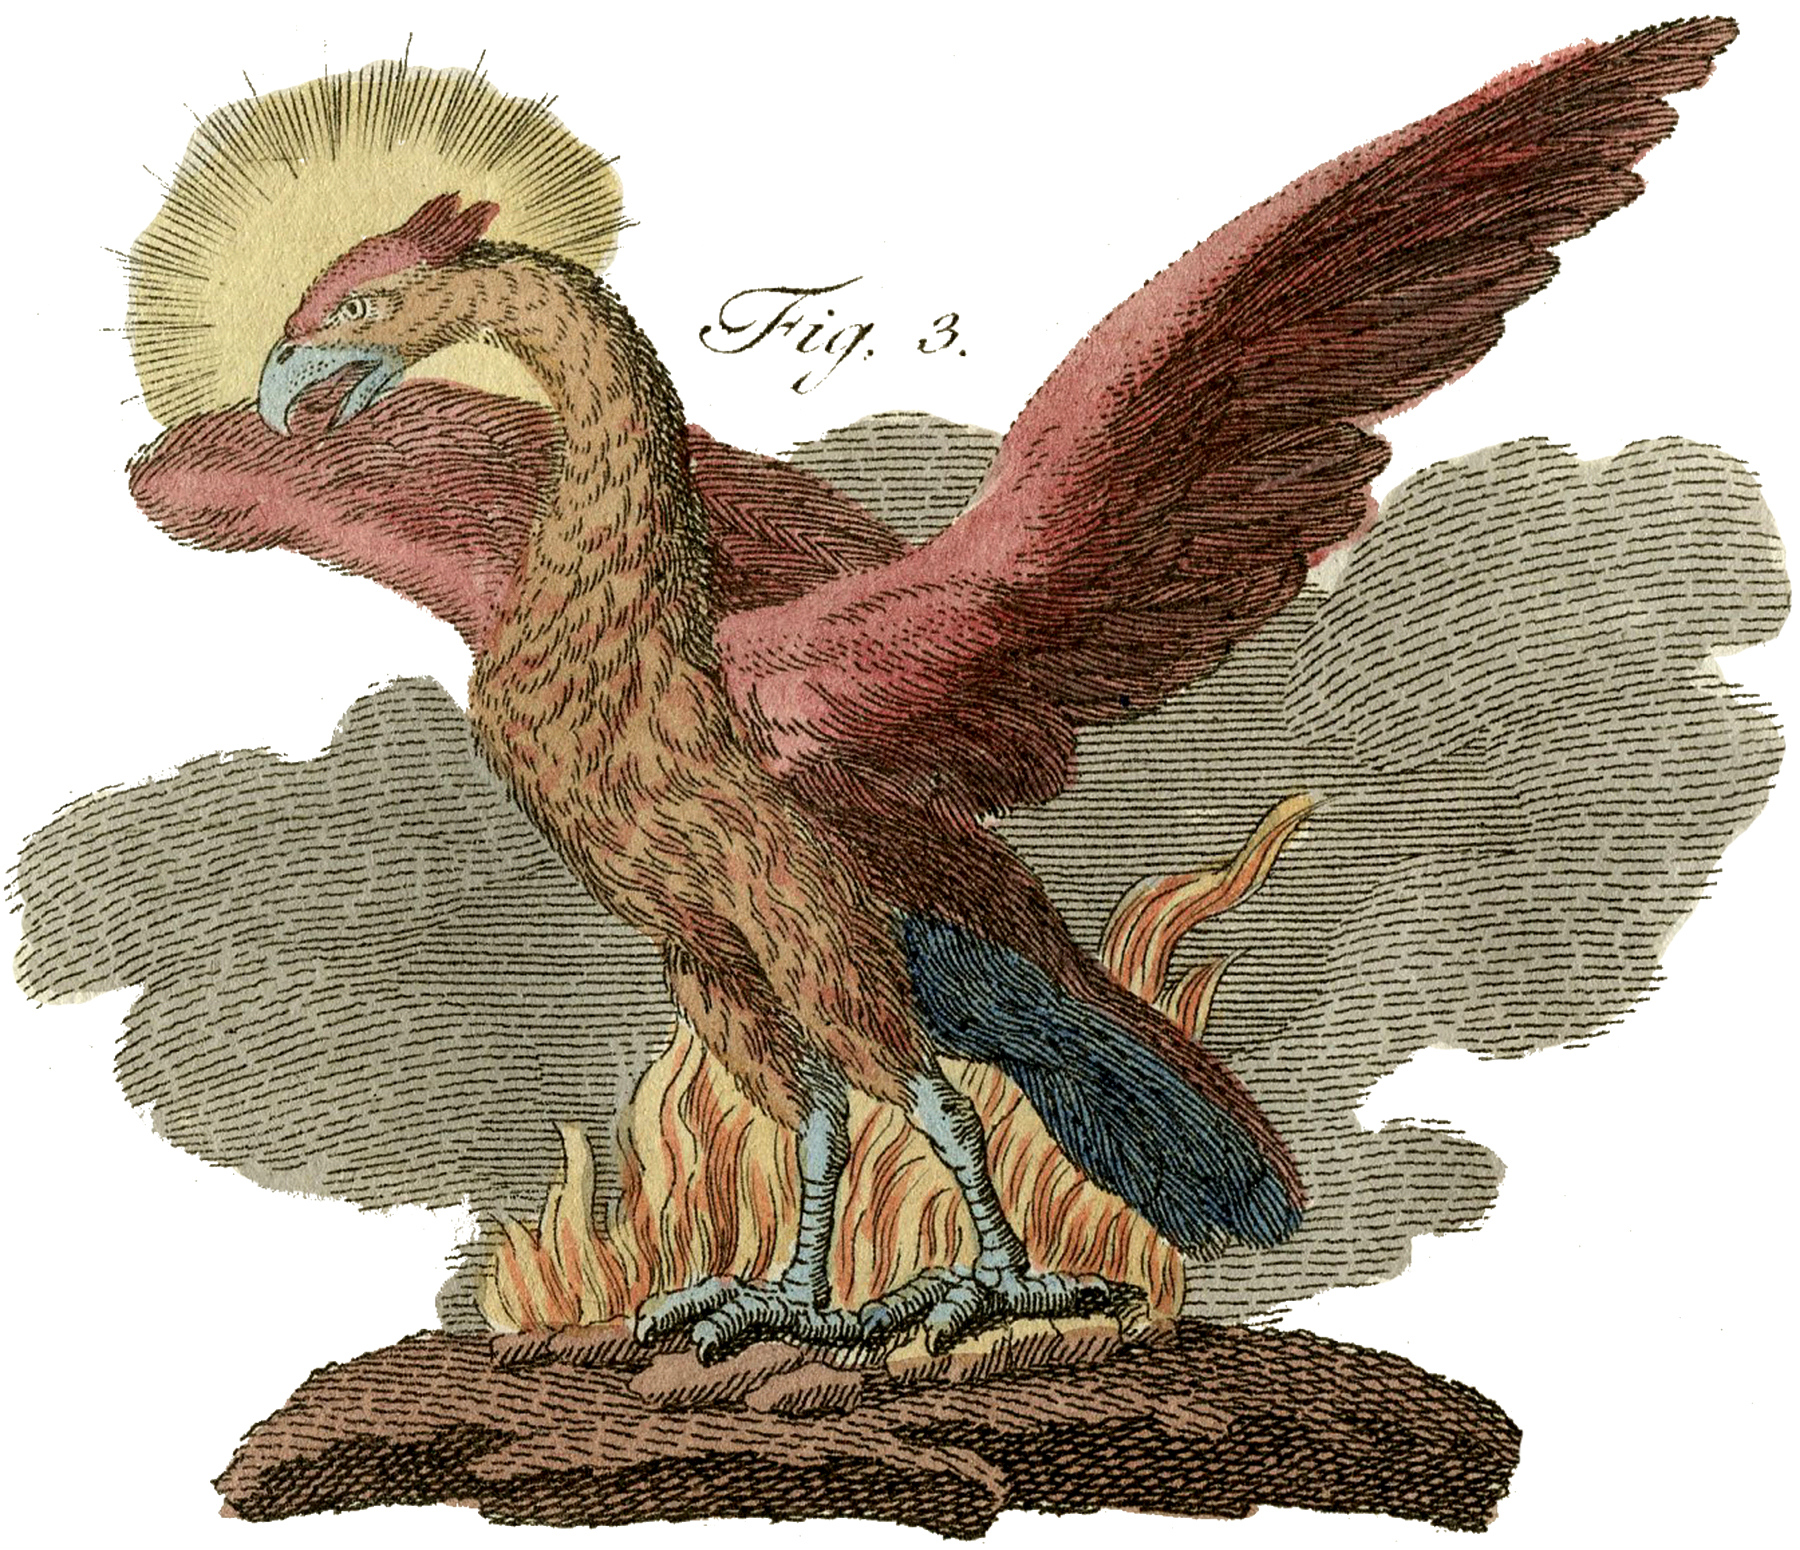 Public Domain Phoenix Image